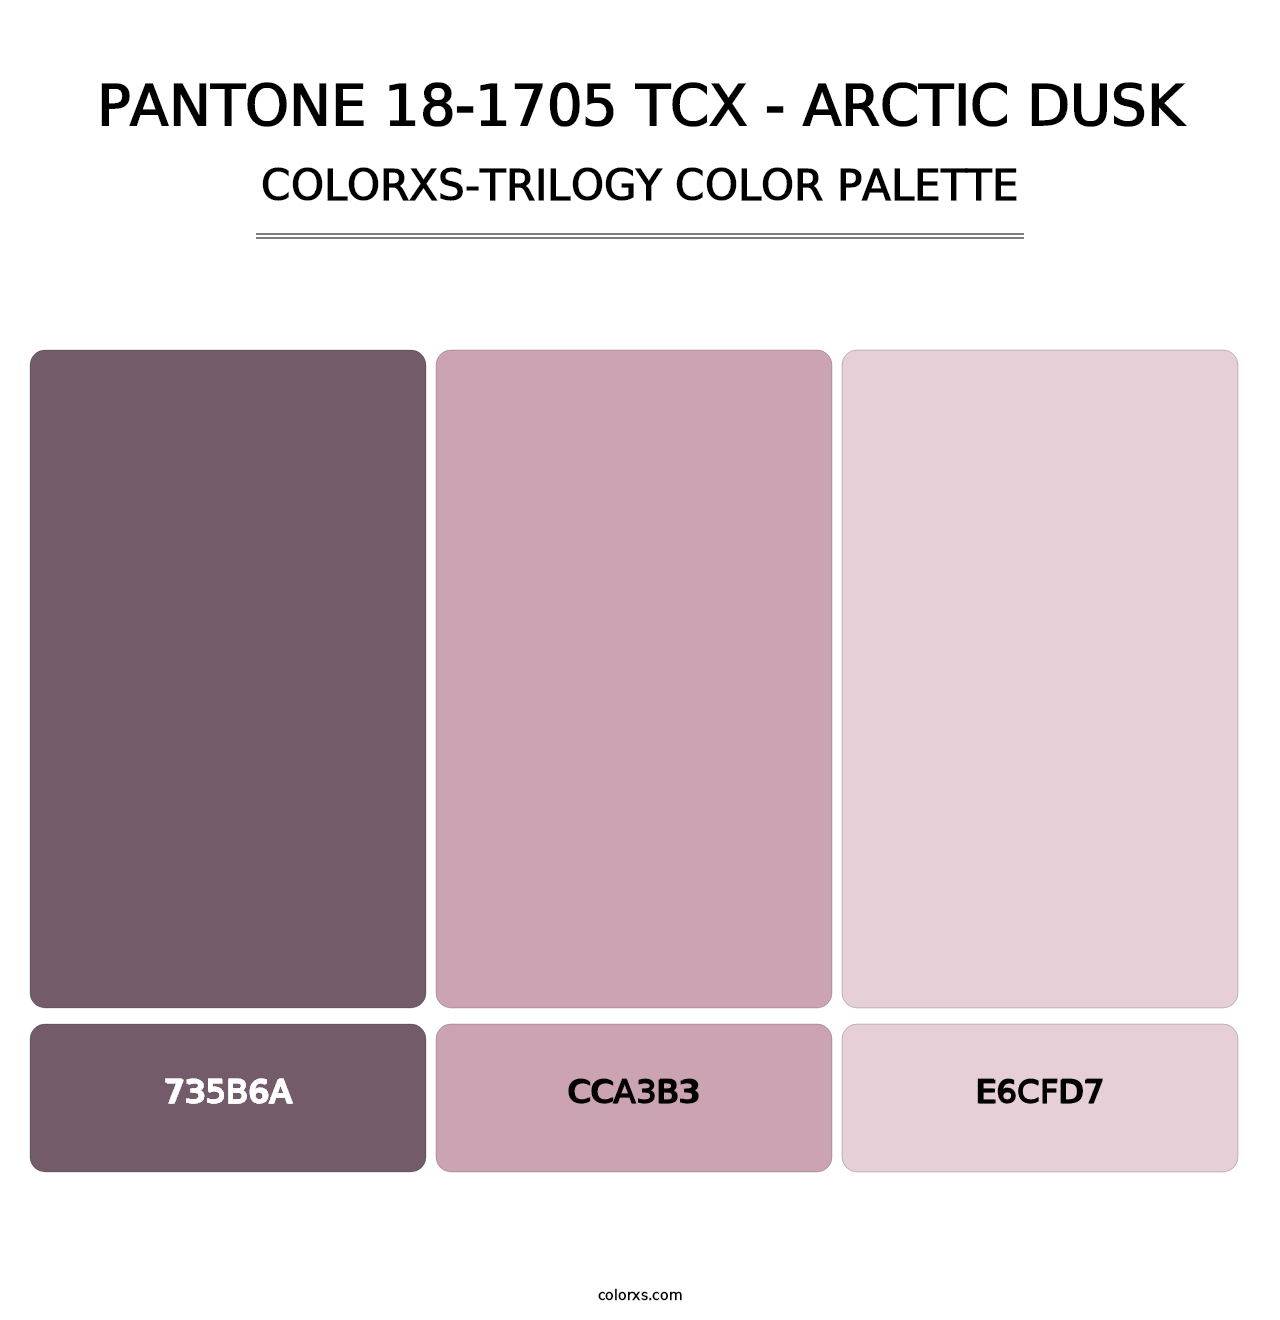 PANTONE 18-1705 TCX - Arctic Dusk - Colorxs Trilogy Palette